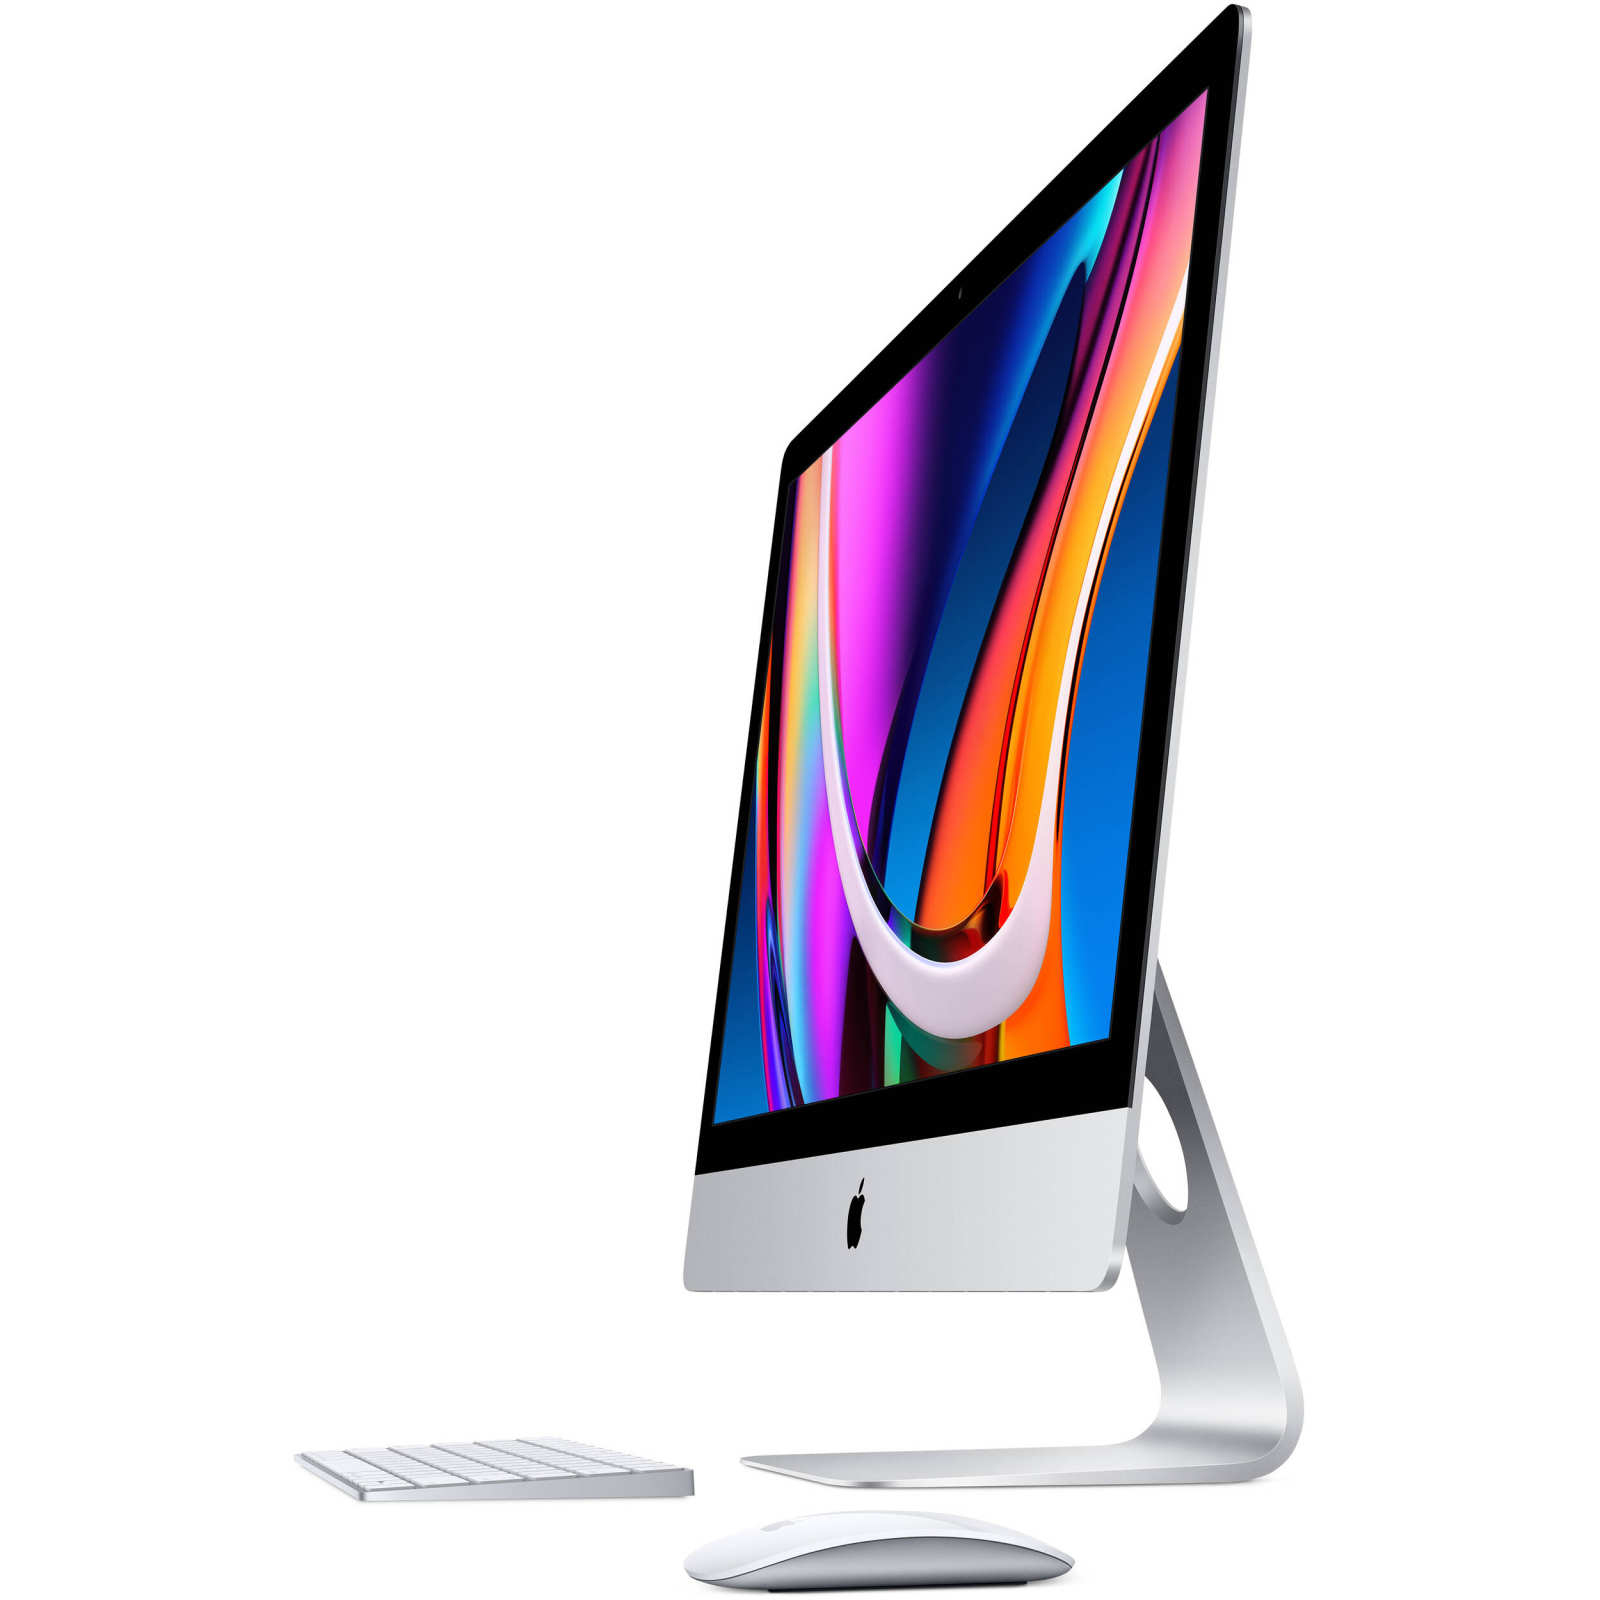 فروش نقدی و اقساطی کامپیوتر همه کاره 27 اینچی اپل مدل iMac MXWU2 2020 با صفحه نمایش رتینا 5K